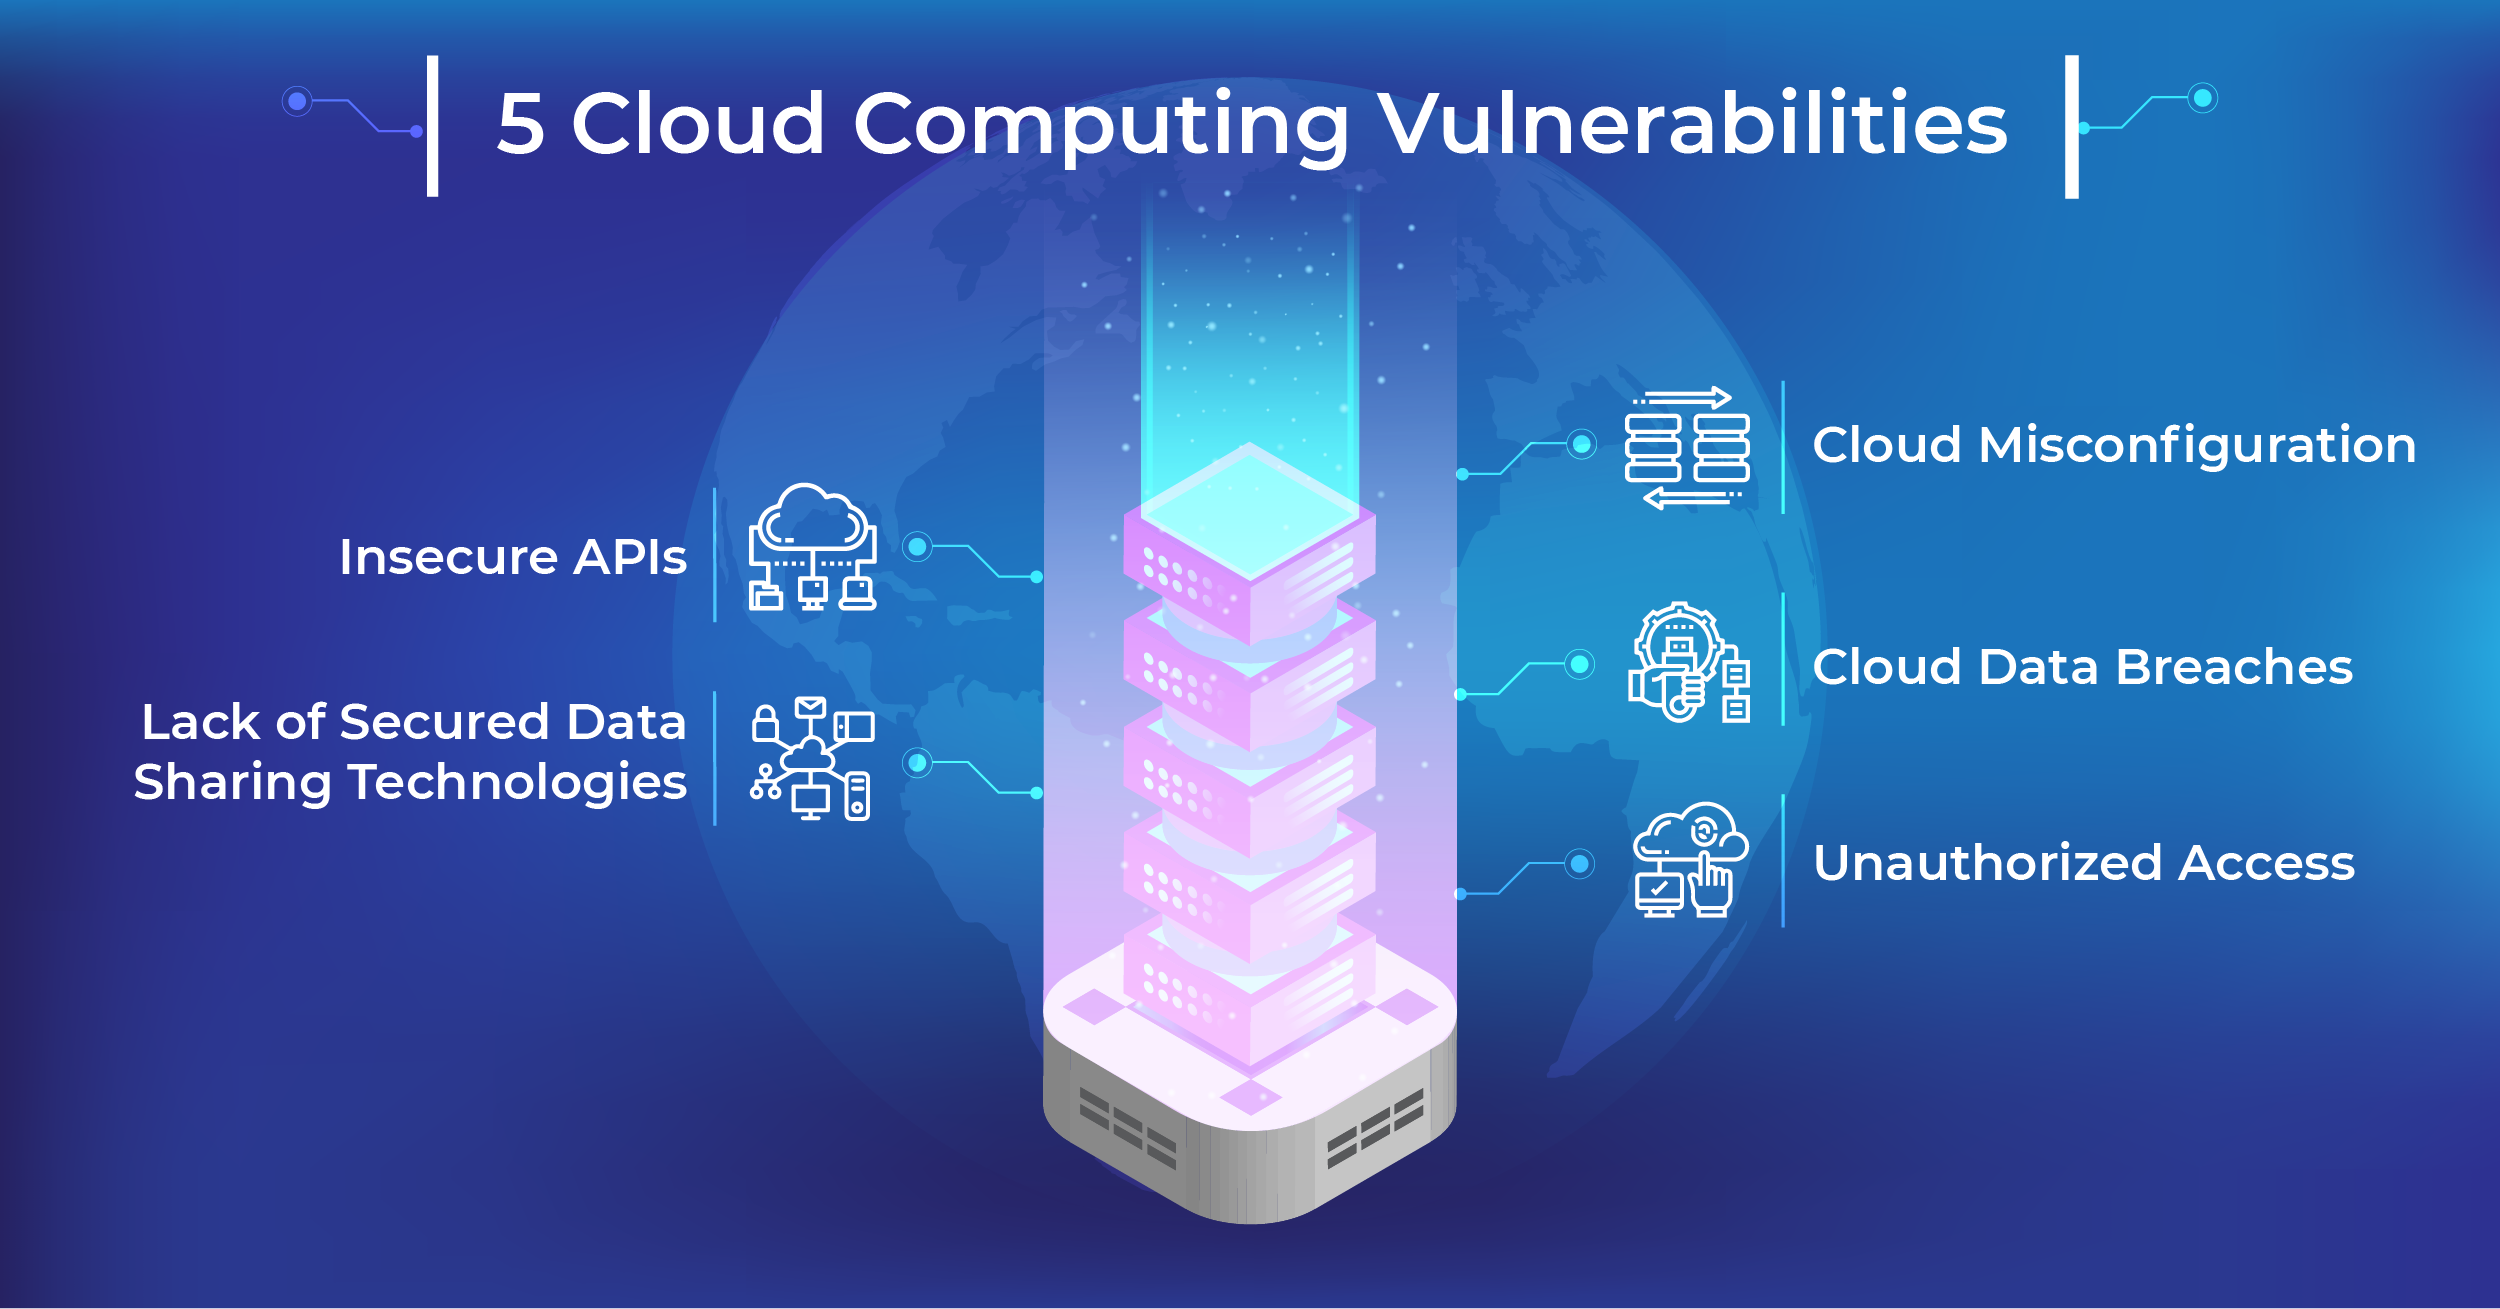  Top 5 Cloud Vulnerabilities to Consider in 2022